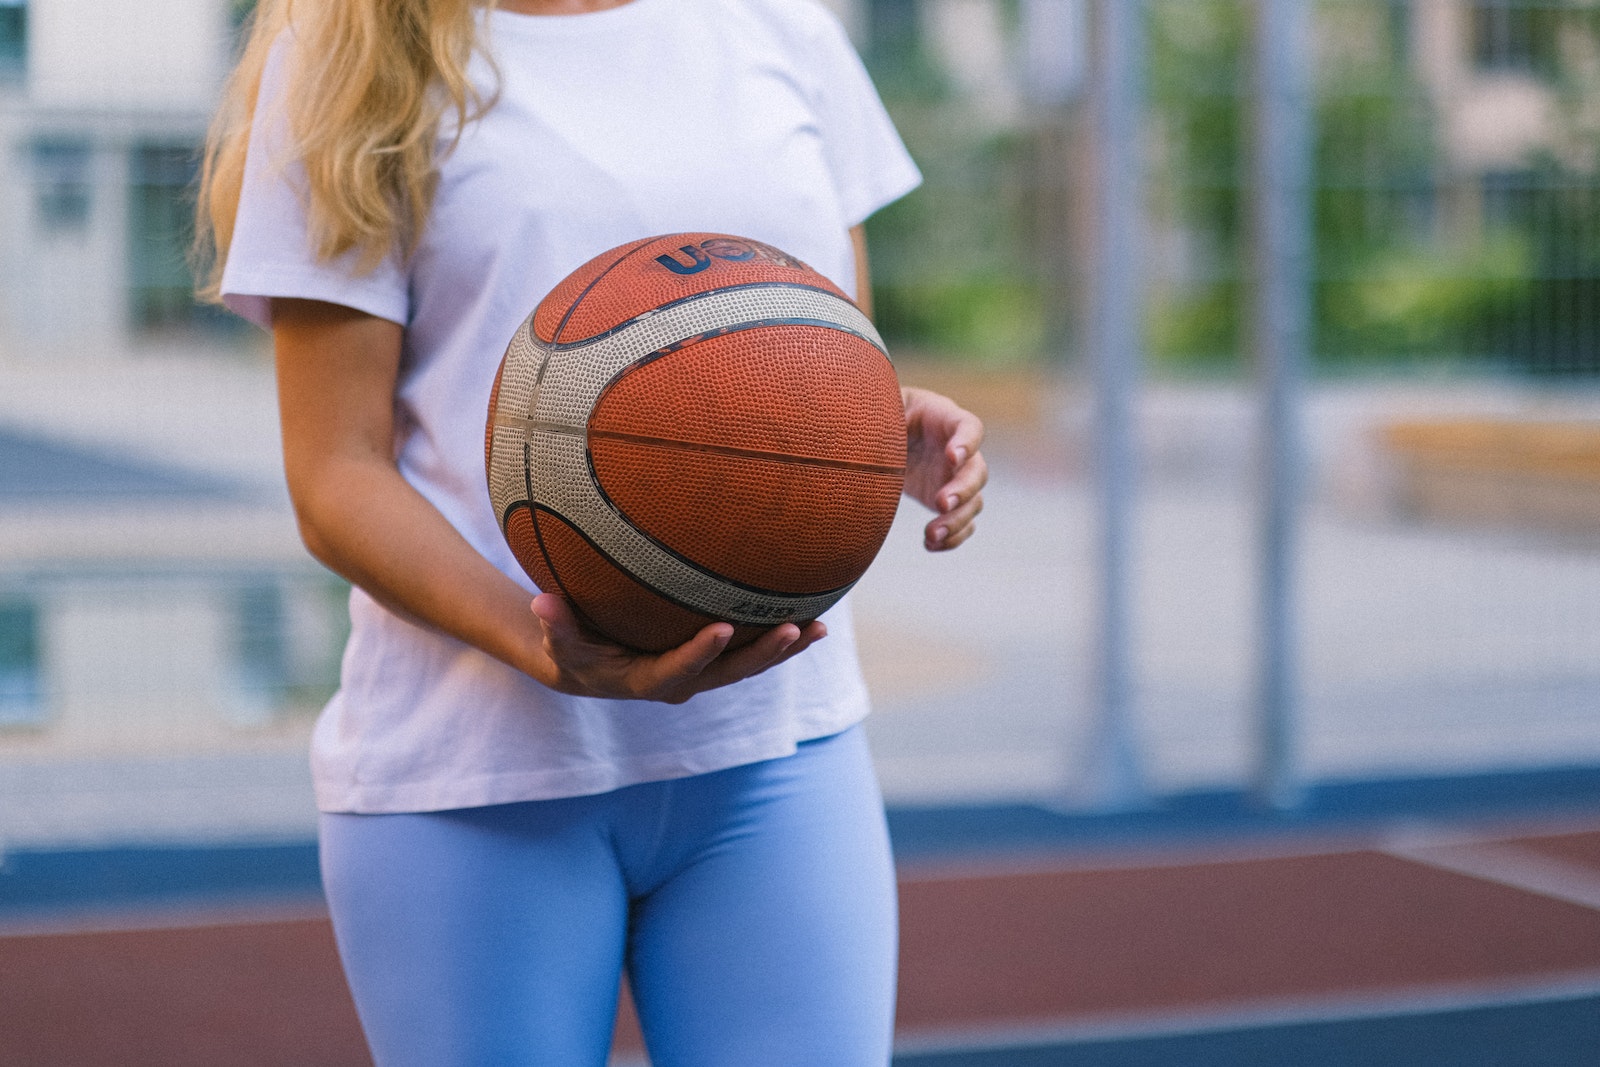 Comment personnaliser un tee-shirt de basket ?